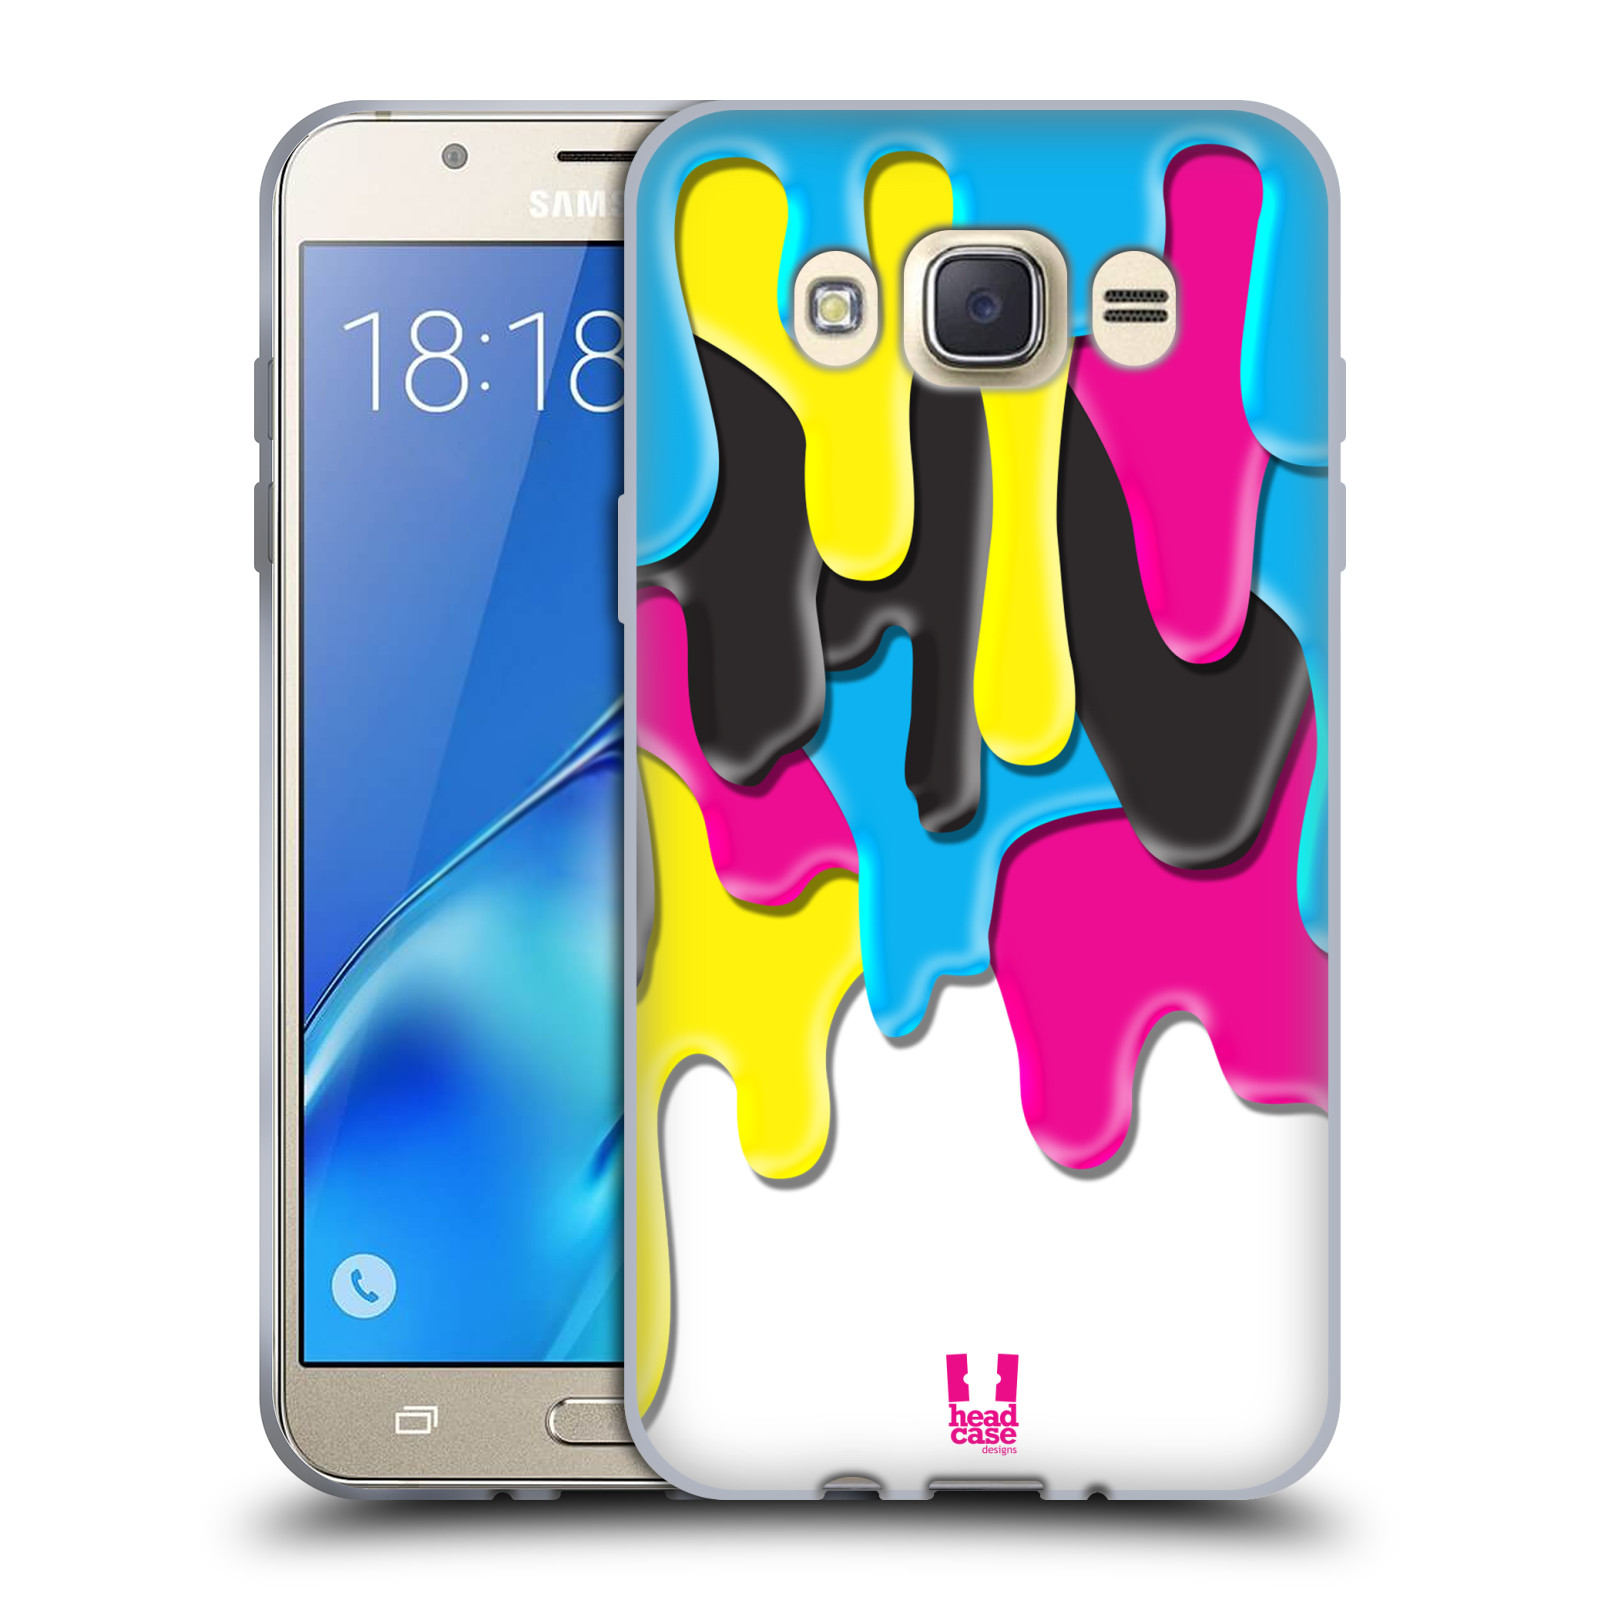 HEAD CASE silikonový obal, kryt na mobil Samsung Galaxy J7 2016 (J710, J710F) vzor Barevná záplava CMYK